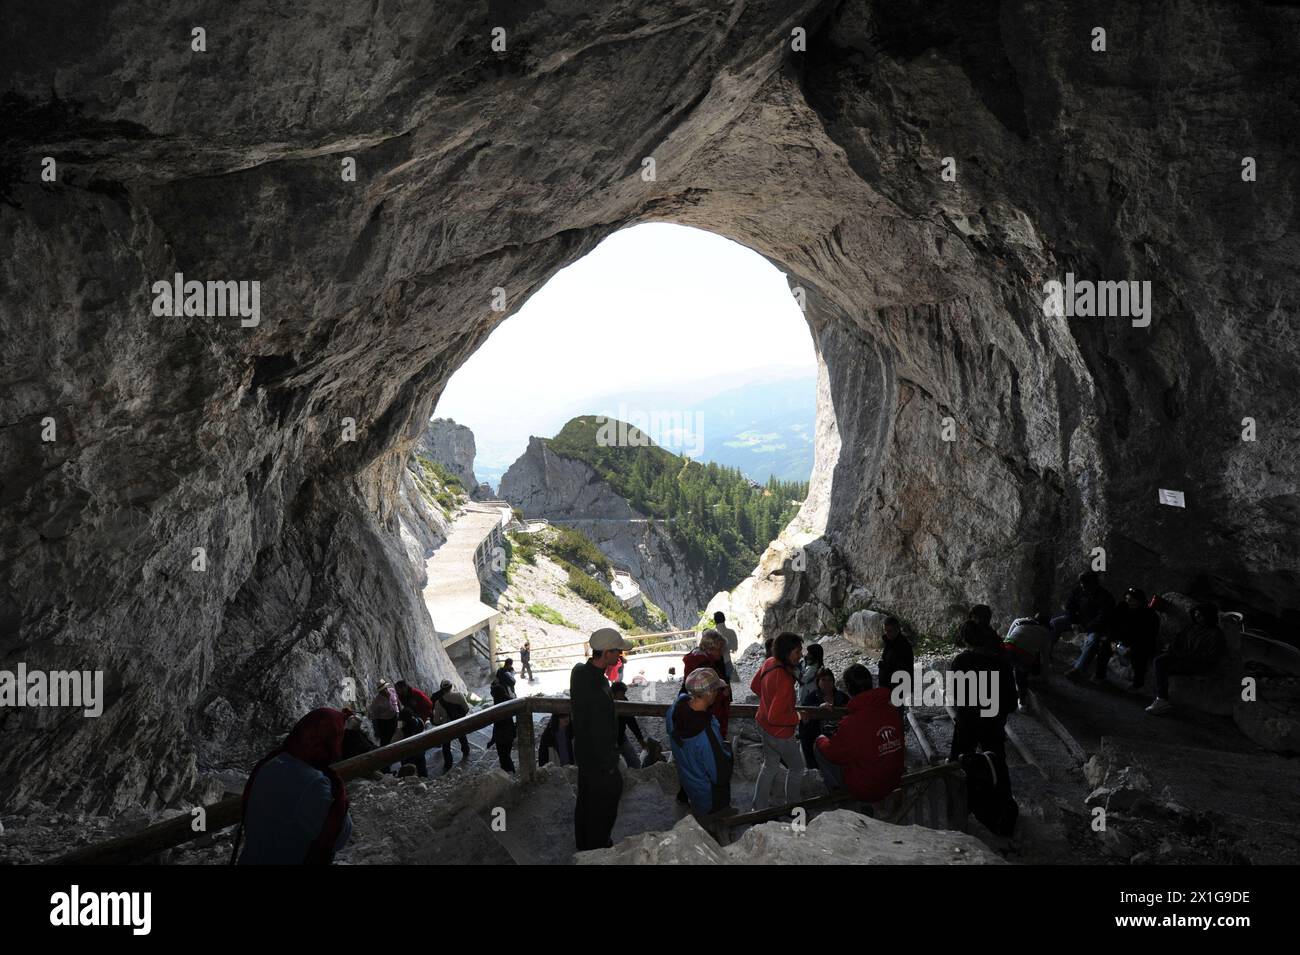 Autriche - grotte de glace de Werfen, la plus grande grotte de glace du monde, capturée le 28 juin 2010. - 20100628 PD10740 - Rechteinfo : droits gérés (RM) Banque D'Images